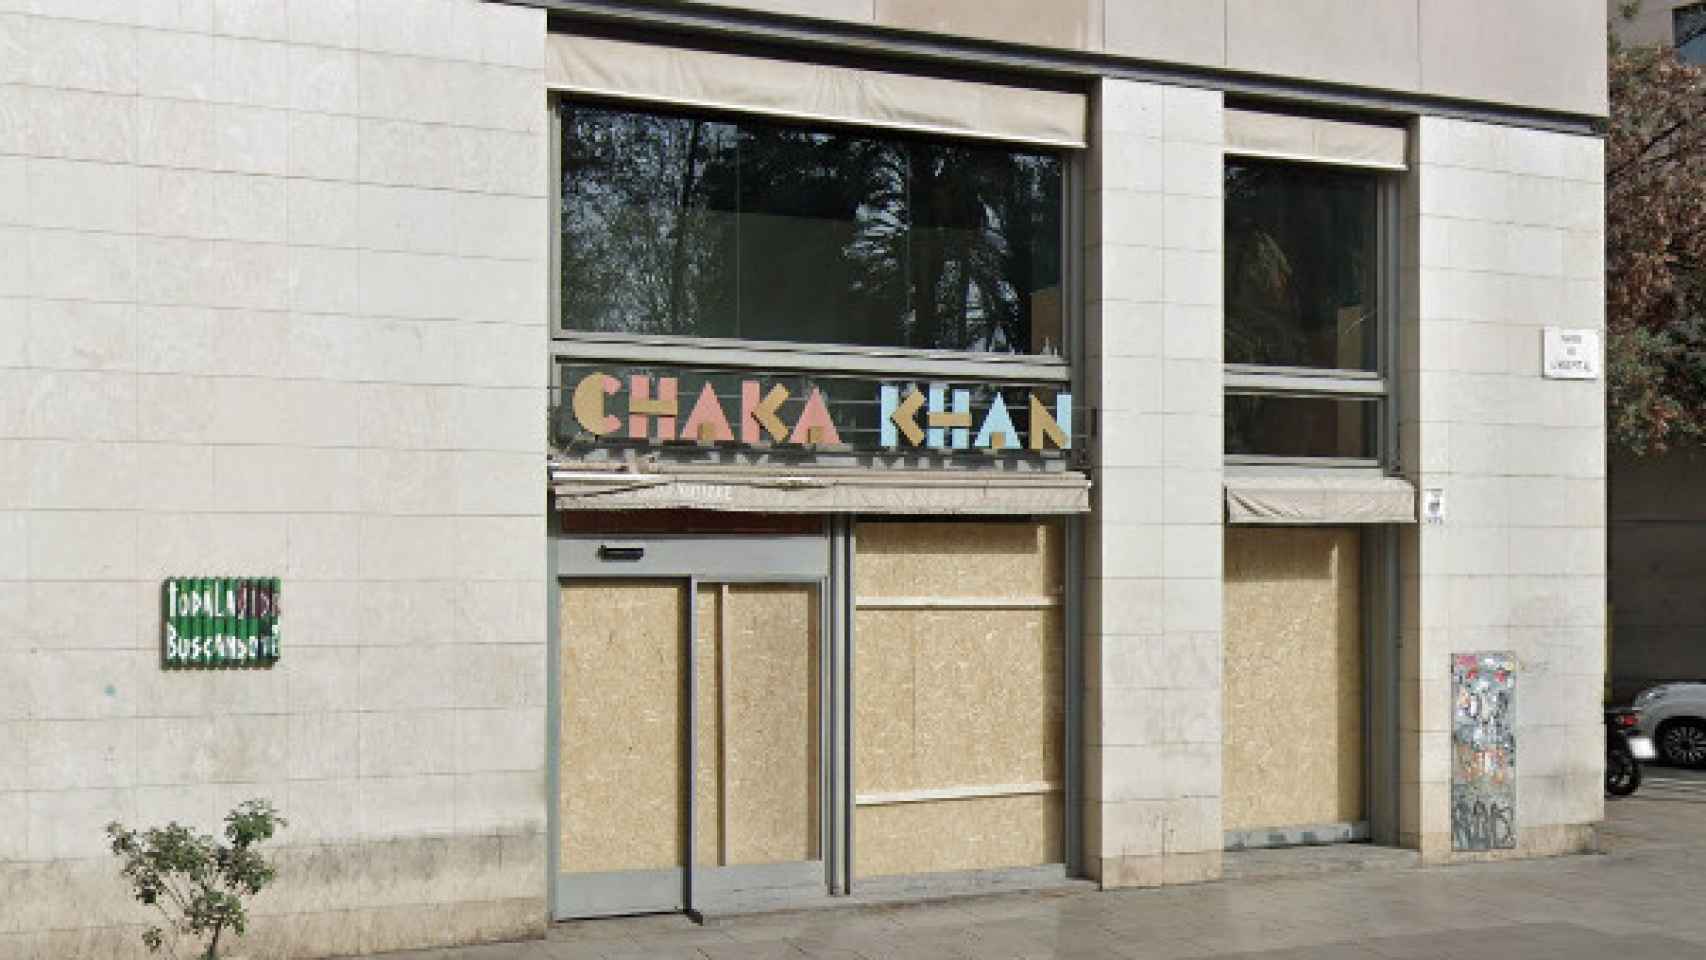 El restaurante Chaka Khan cerrado